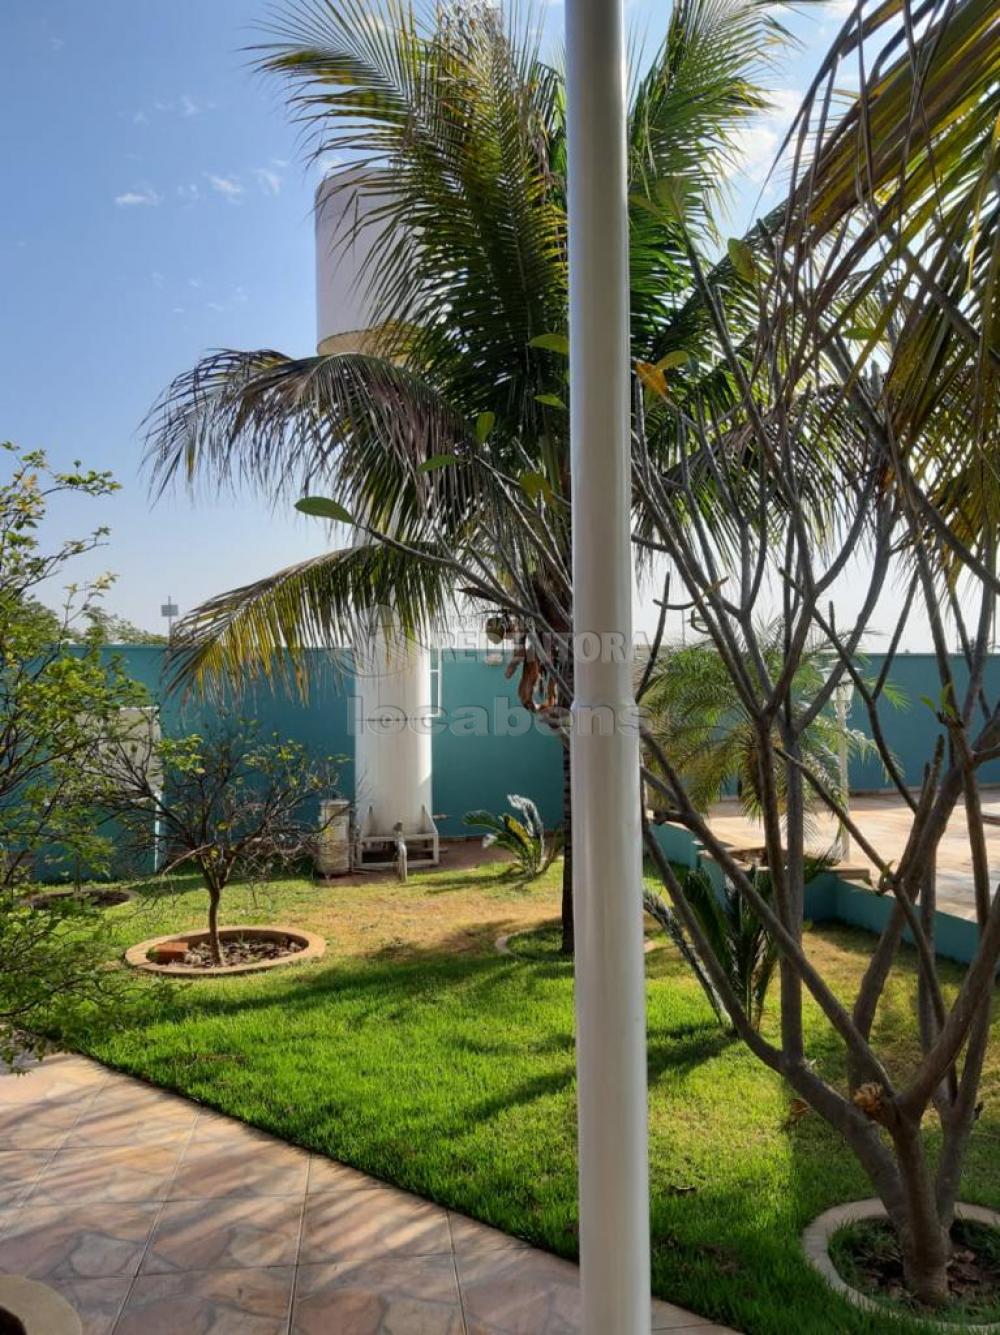 Comprar Casa / Padrão em Guapiaçu apenas R$ 2.000.000,00 - Foto 15